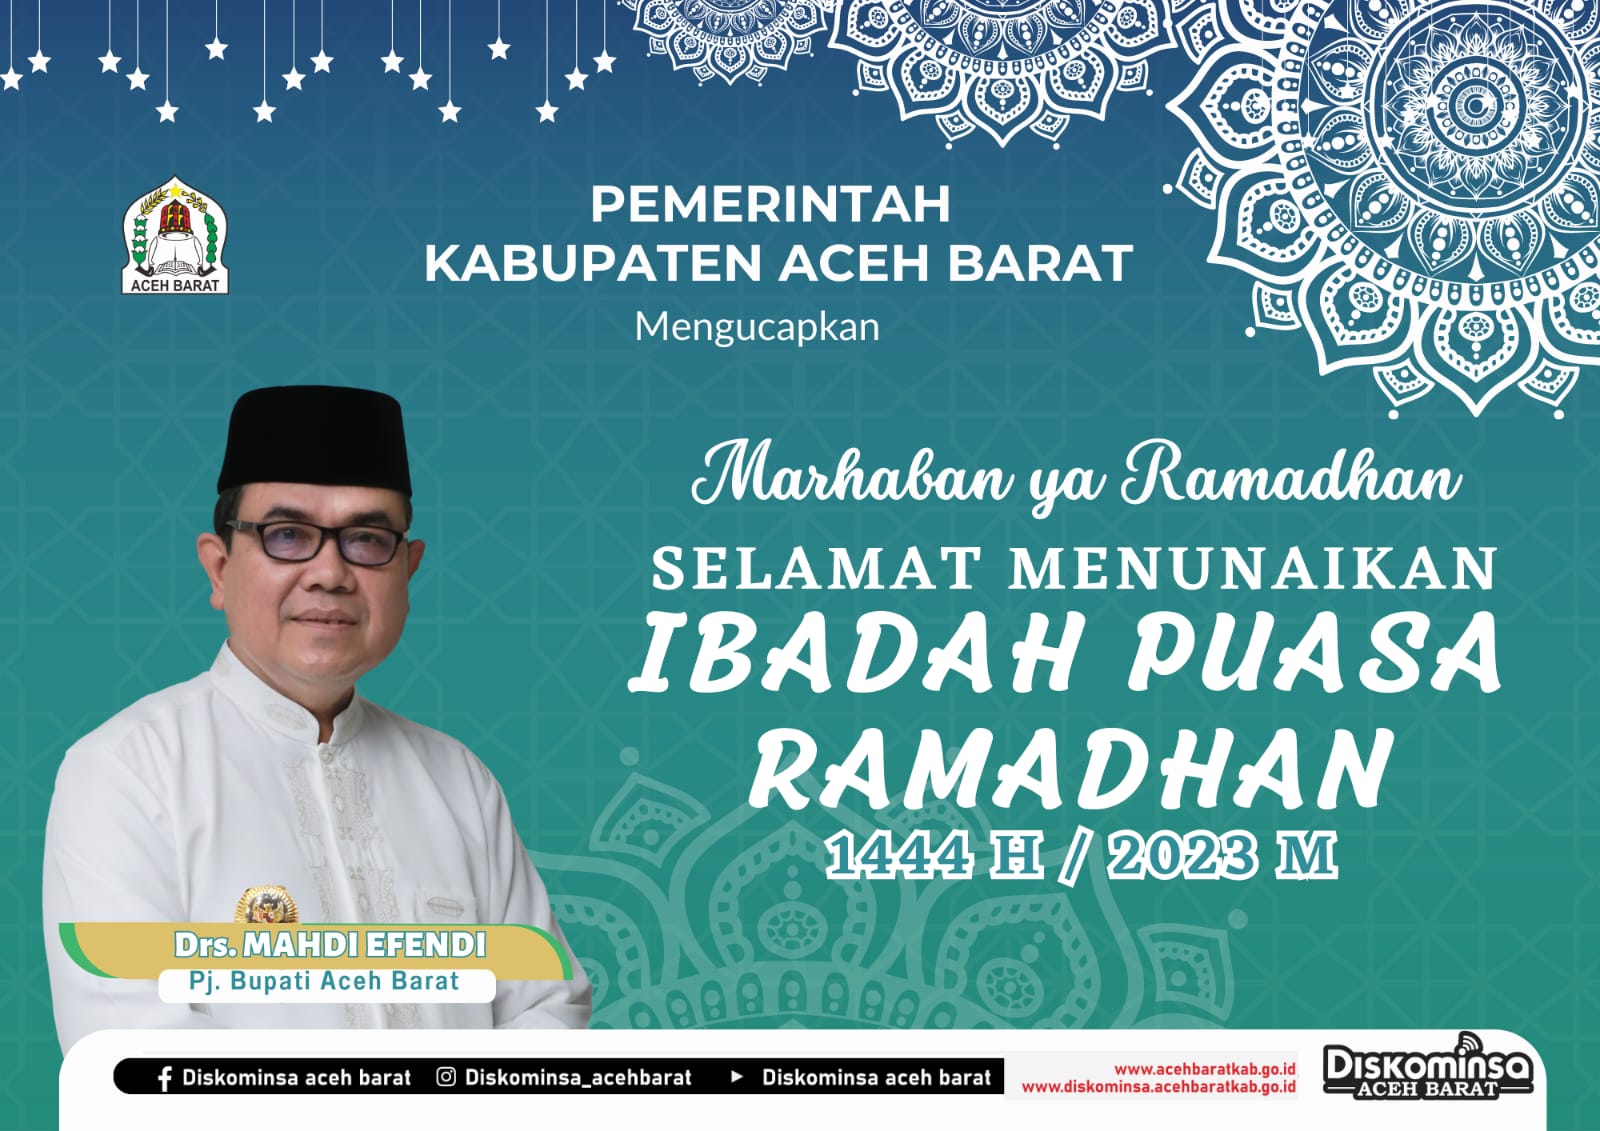 Iklan ucapan selamat menunaikan ibadah puasa di bulan suci Ramadhan 1444 H dari Pj Bupati Aceh Barat